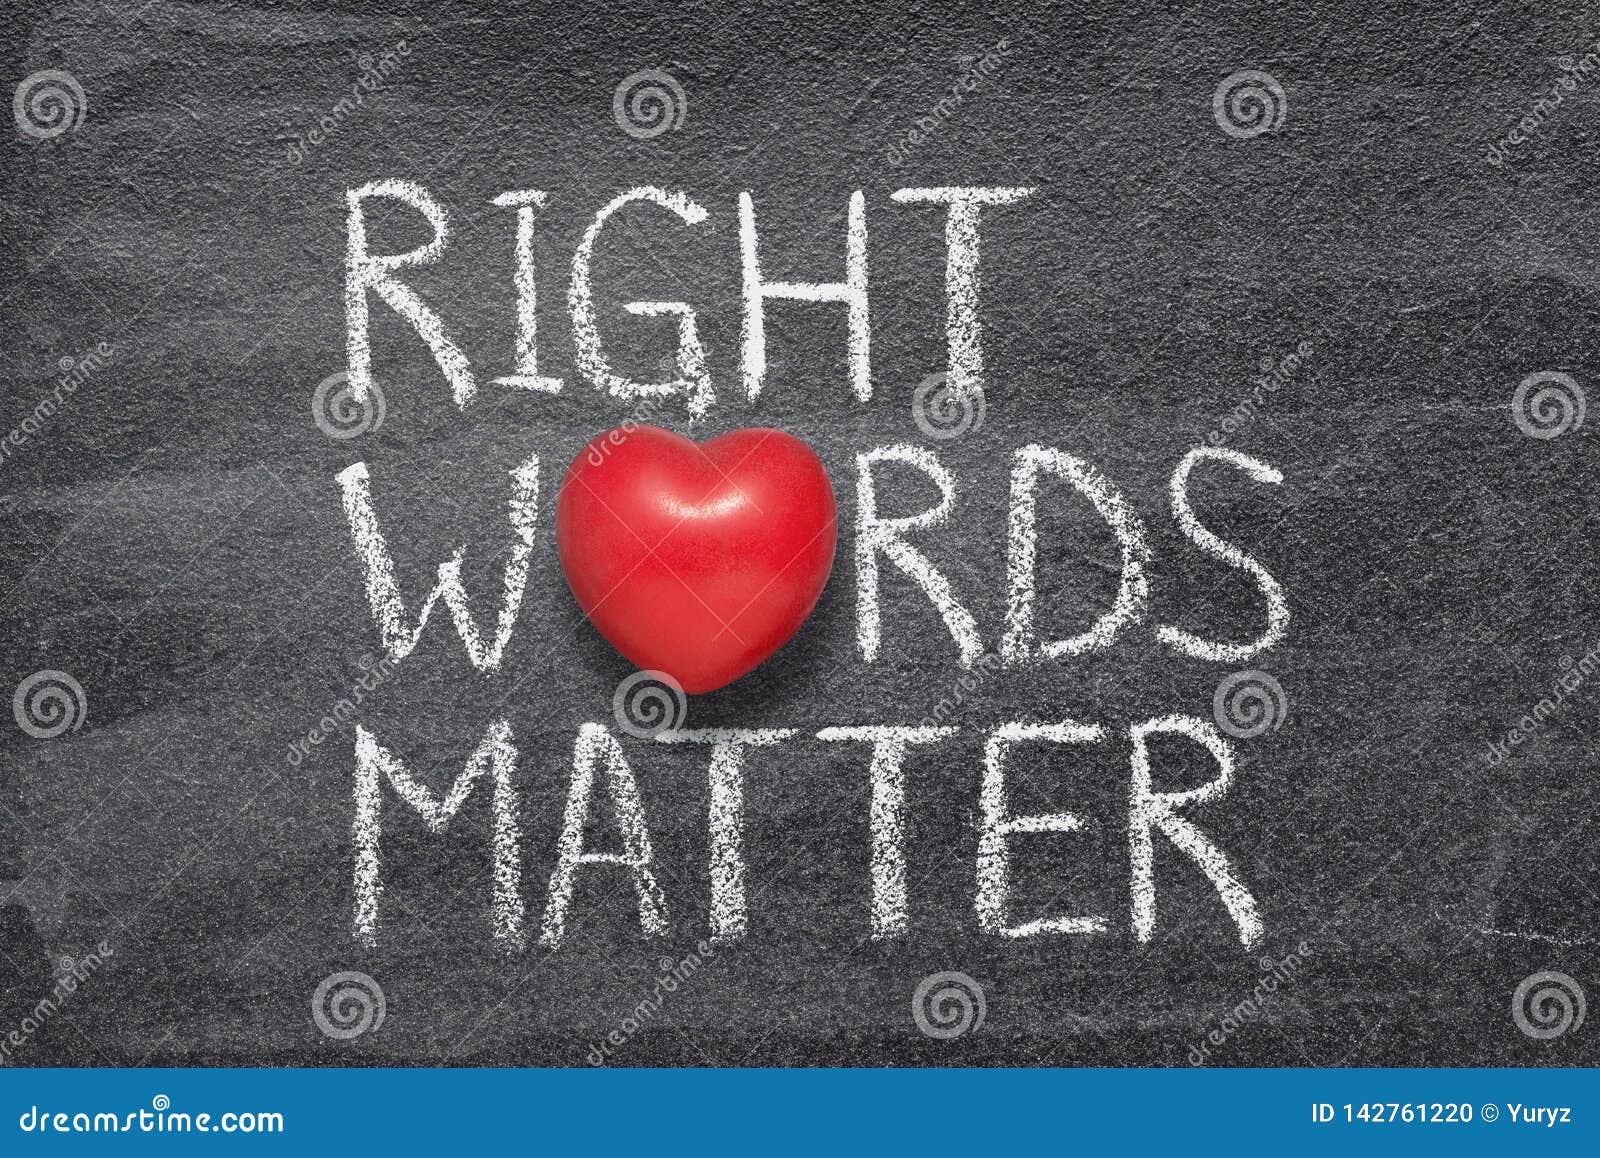 right words matter heart